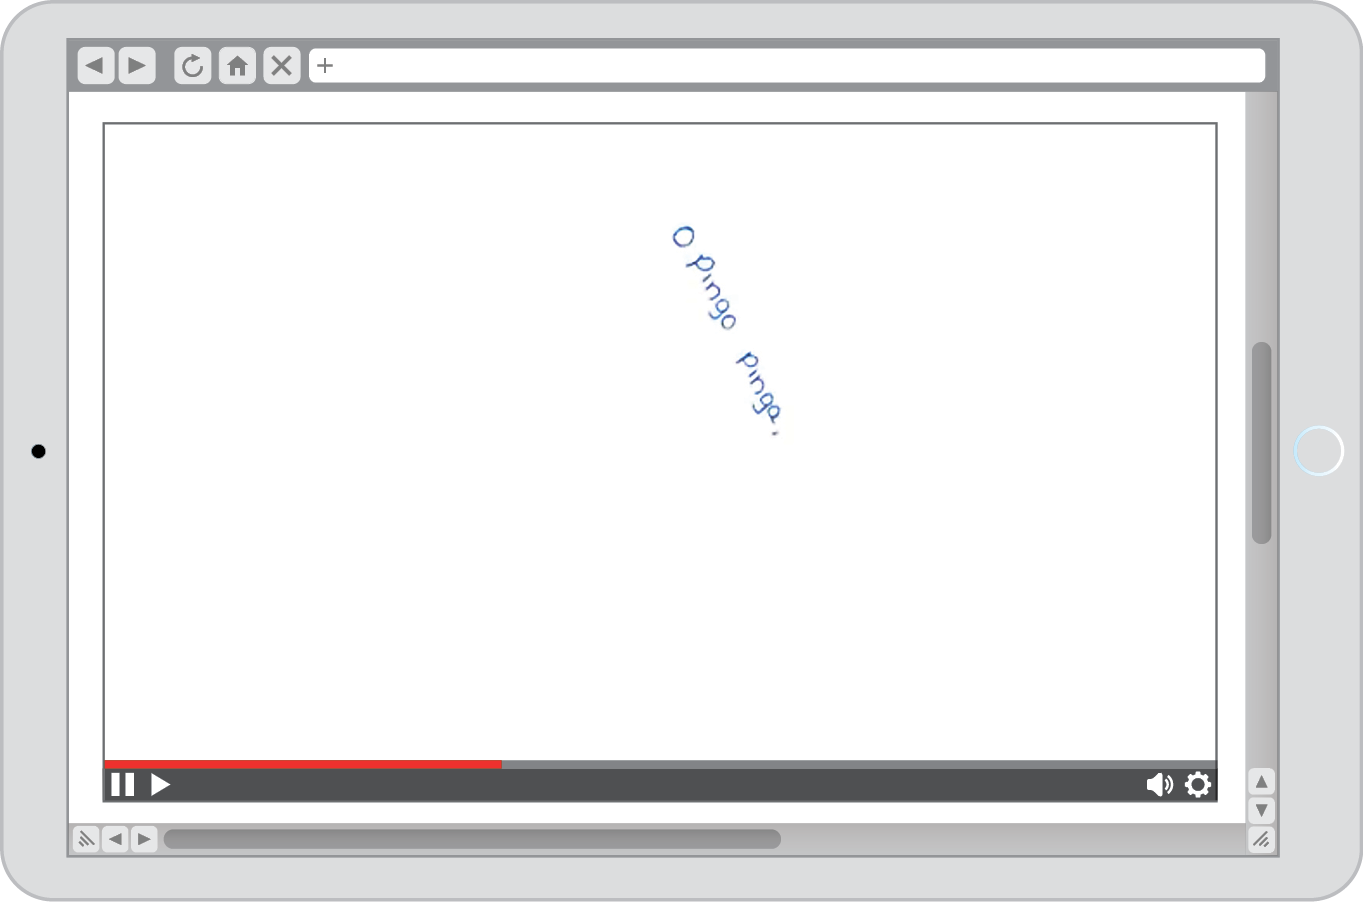 Reprodução de página da internet. Tela em branco com o trecho O PINGO PINGA, disposto verticalmente no centro. Está escrito em letra minúscula.